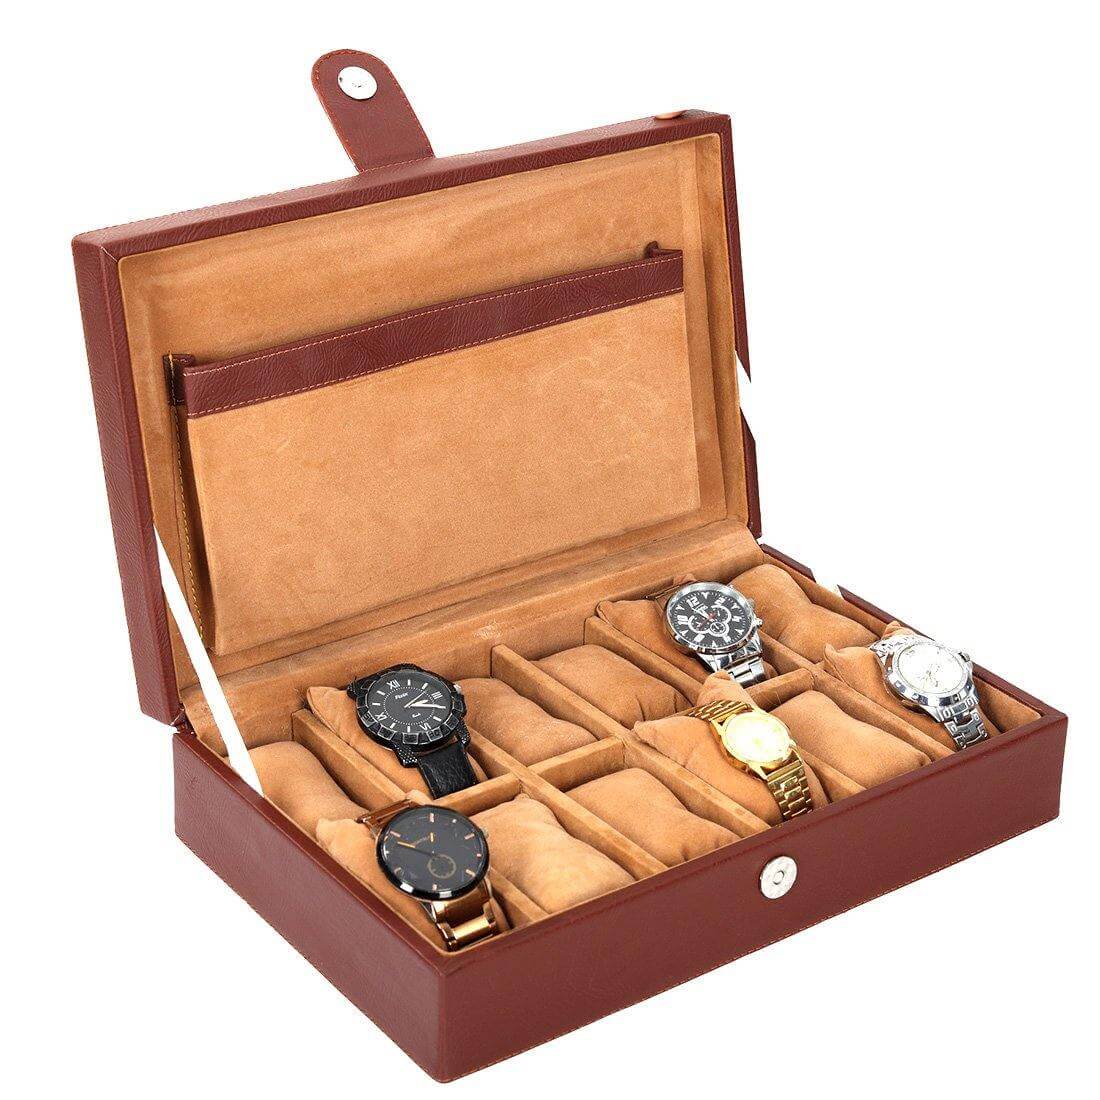 12 Slots Luxury Watch Box Organizer with Plain PU Leather Finish